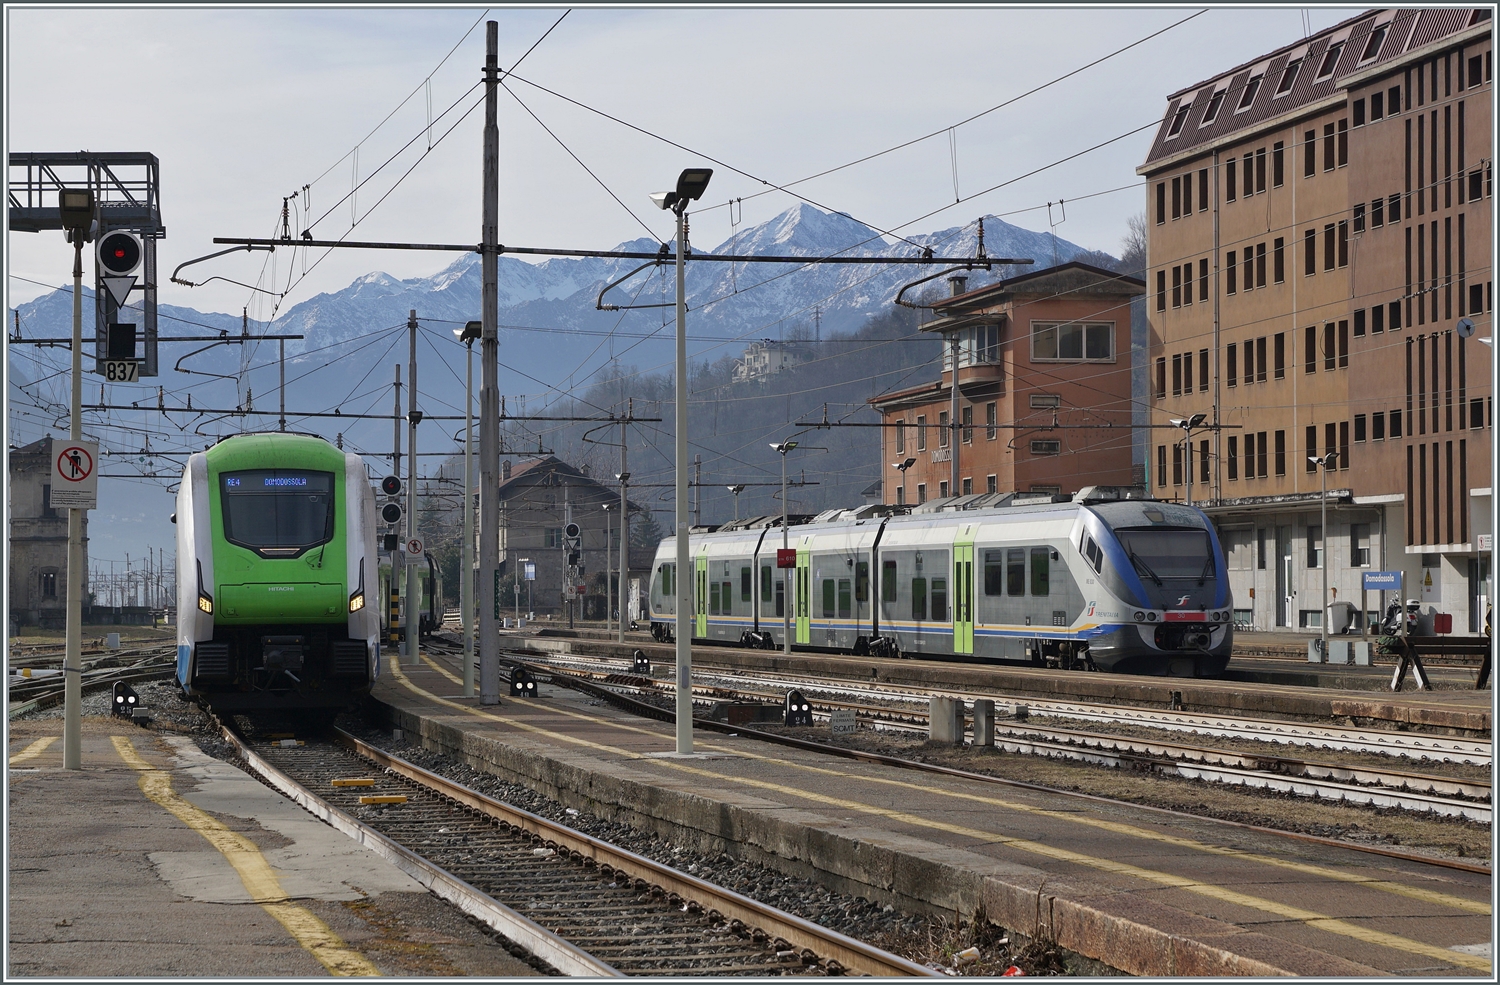 Während auf Gleis 5 in Domodossola ein Trenord ETR 421 von Milano ankommt, steht auf dem Troco ein Trenitalia ME 501  Minuetto  der um 12:45 nach Novara fahren wird.

2. Feb. 2024